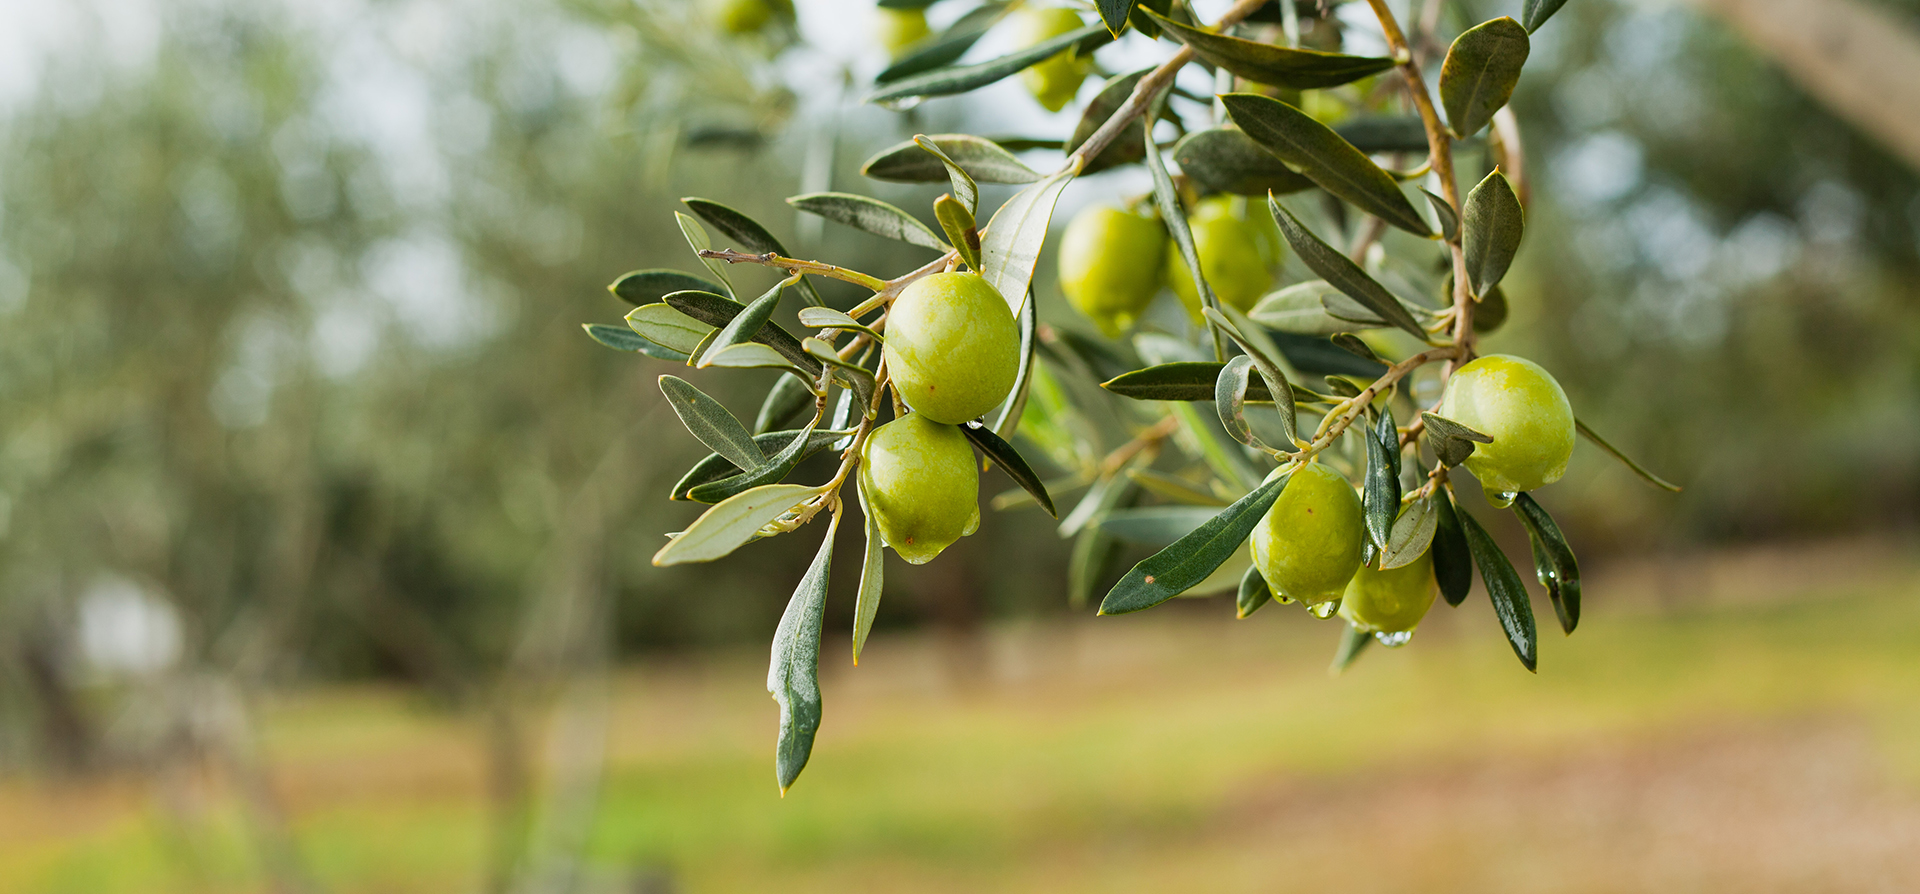 Come combattere la mosca dell’olivo